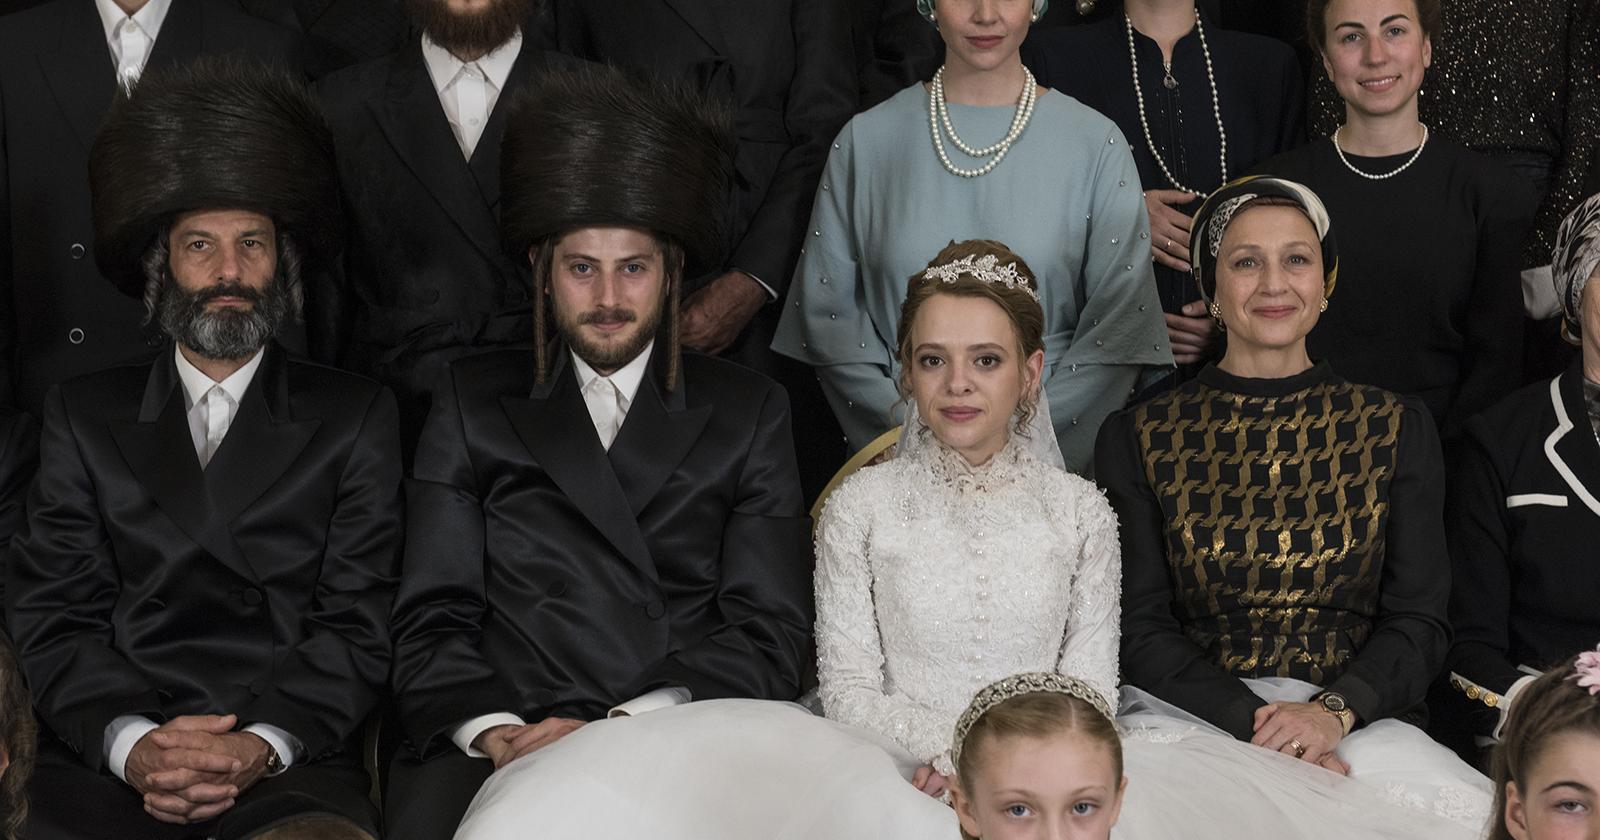 En la imagen vemos a Etsy, protagonista de la mini serie Poco Ortodoxa, en el día de su boda. Ella está sentada al medio de los miembros de su comunidad extremadamente religiosa. Esta fue una de las series 2020 más vistas de Netflix.